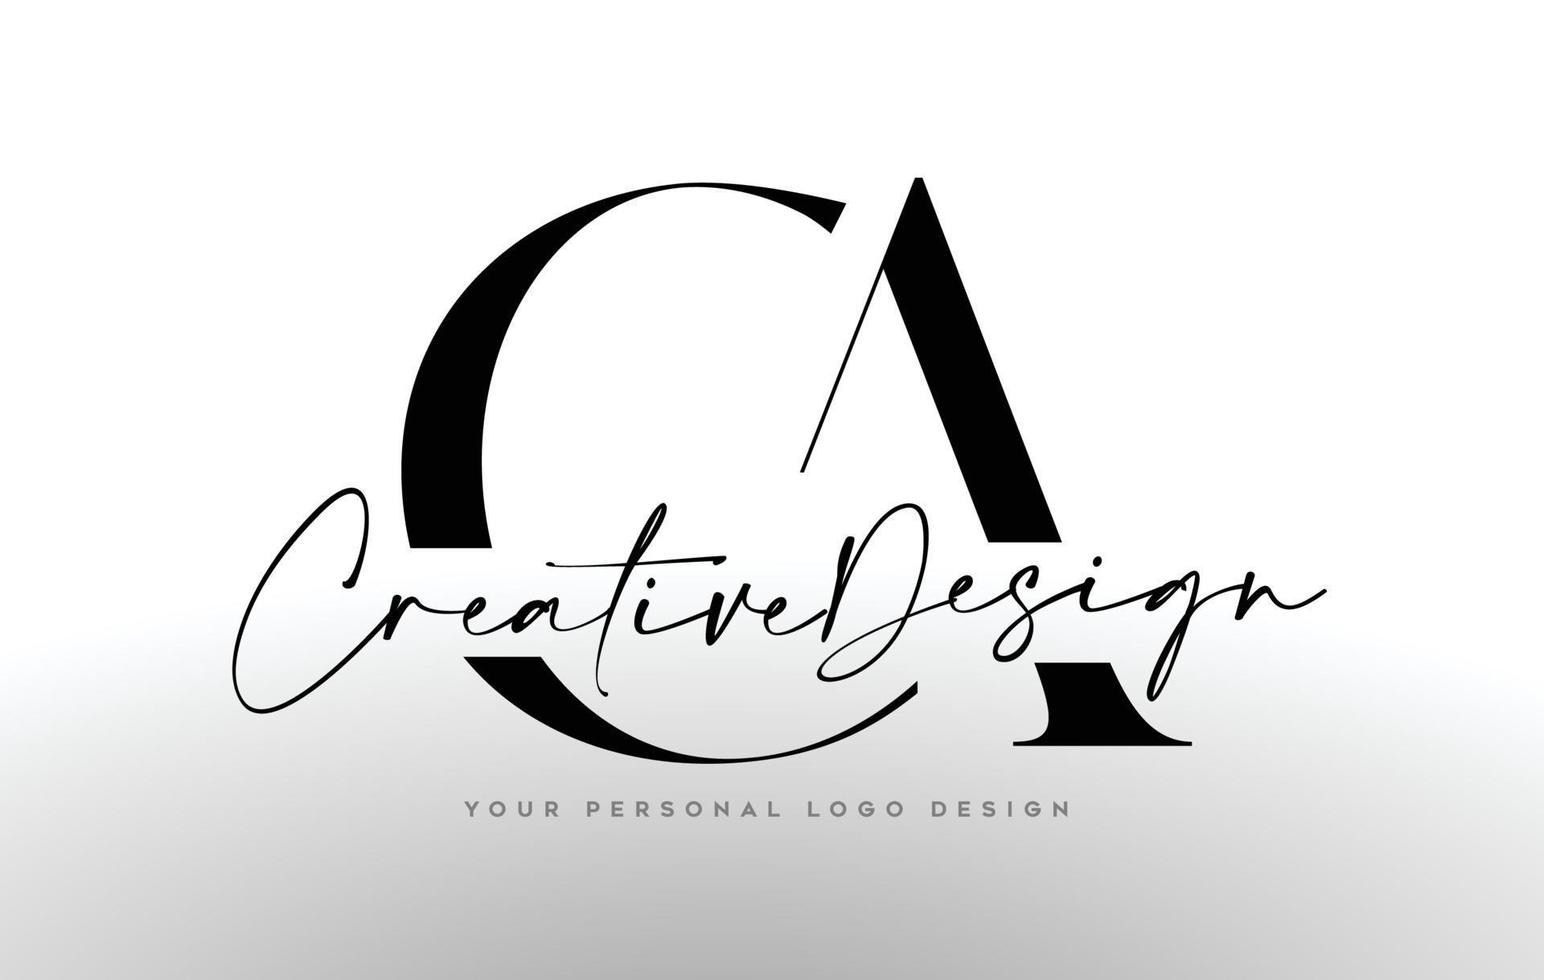 icona del design del logo della lettera ca con font serif e illustrazione vettoriale di lettere creative unite